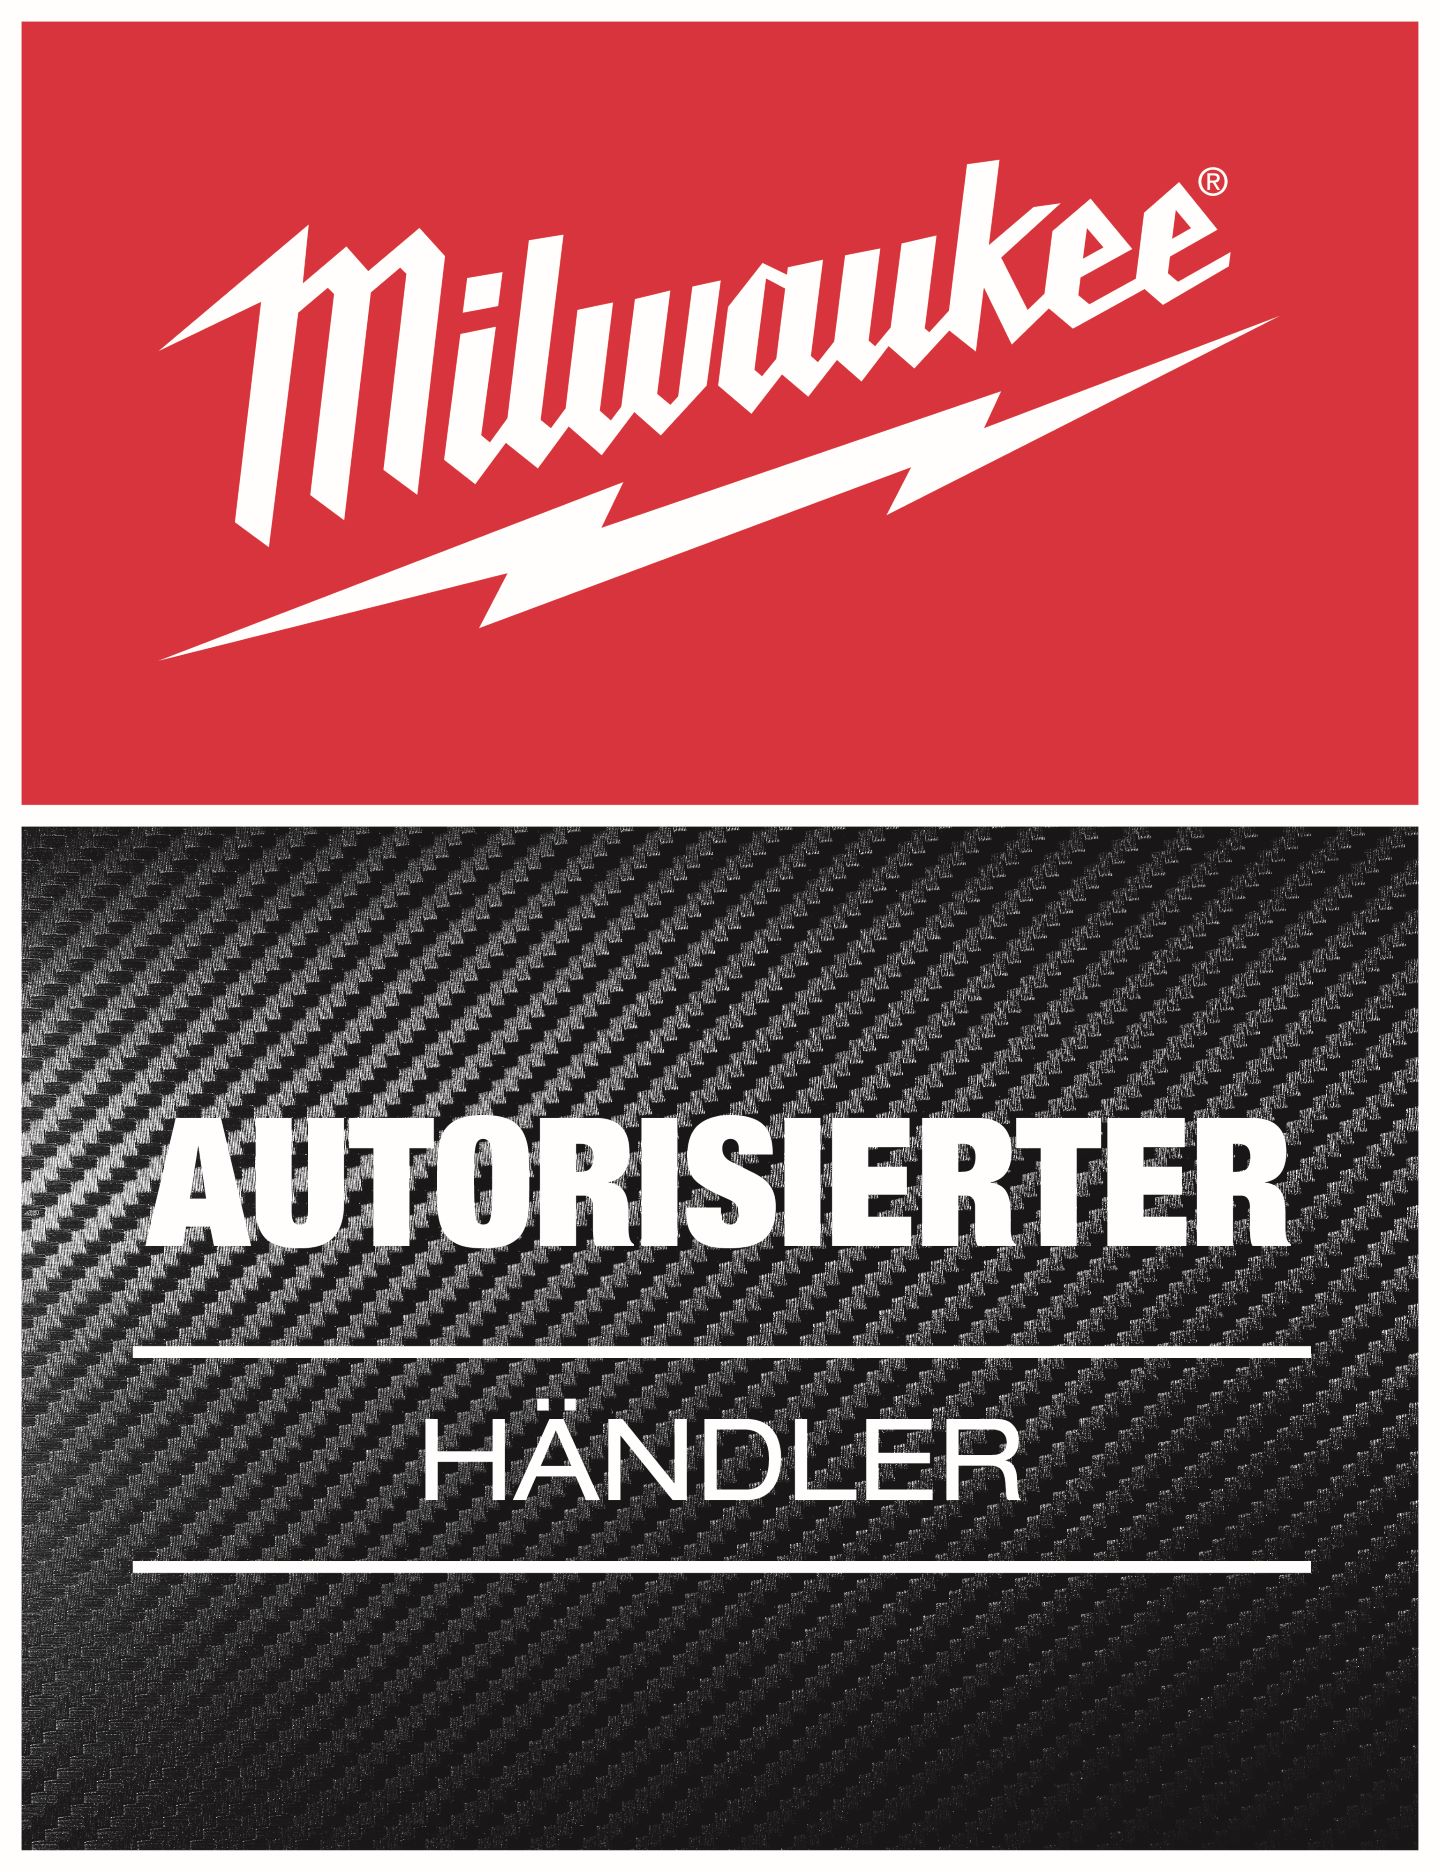 Autorisierter Milwaukee Händler